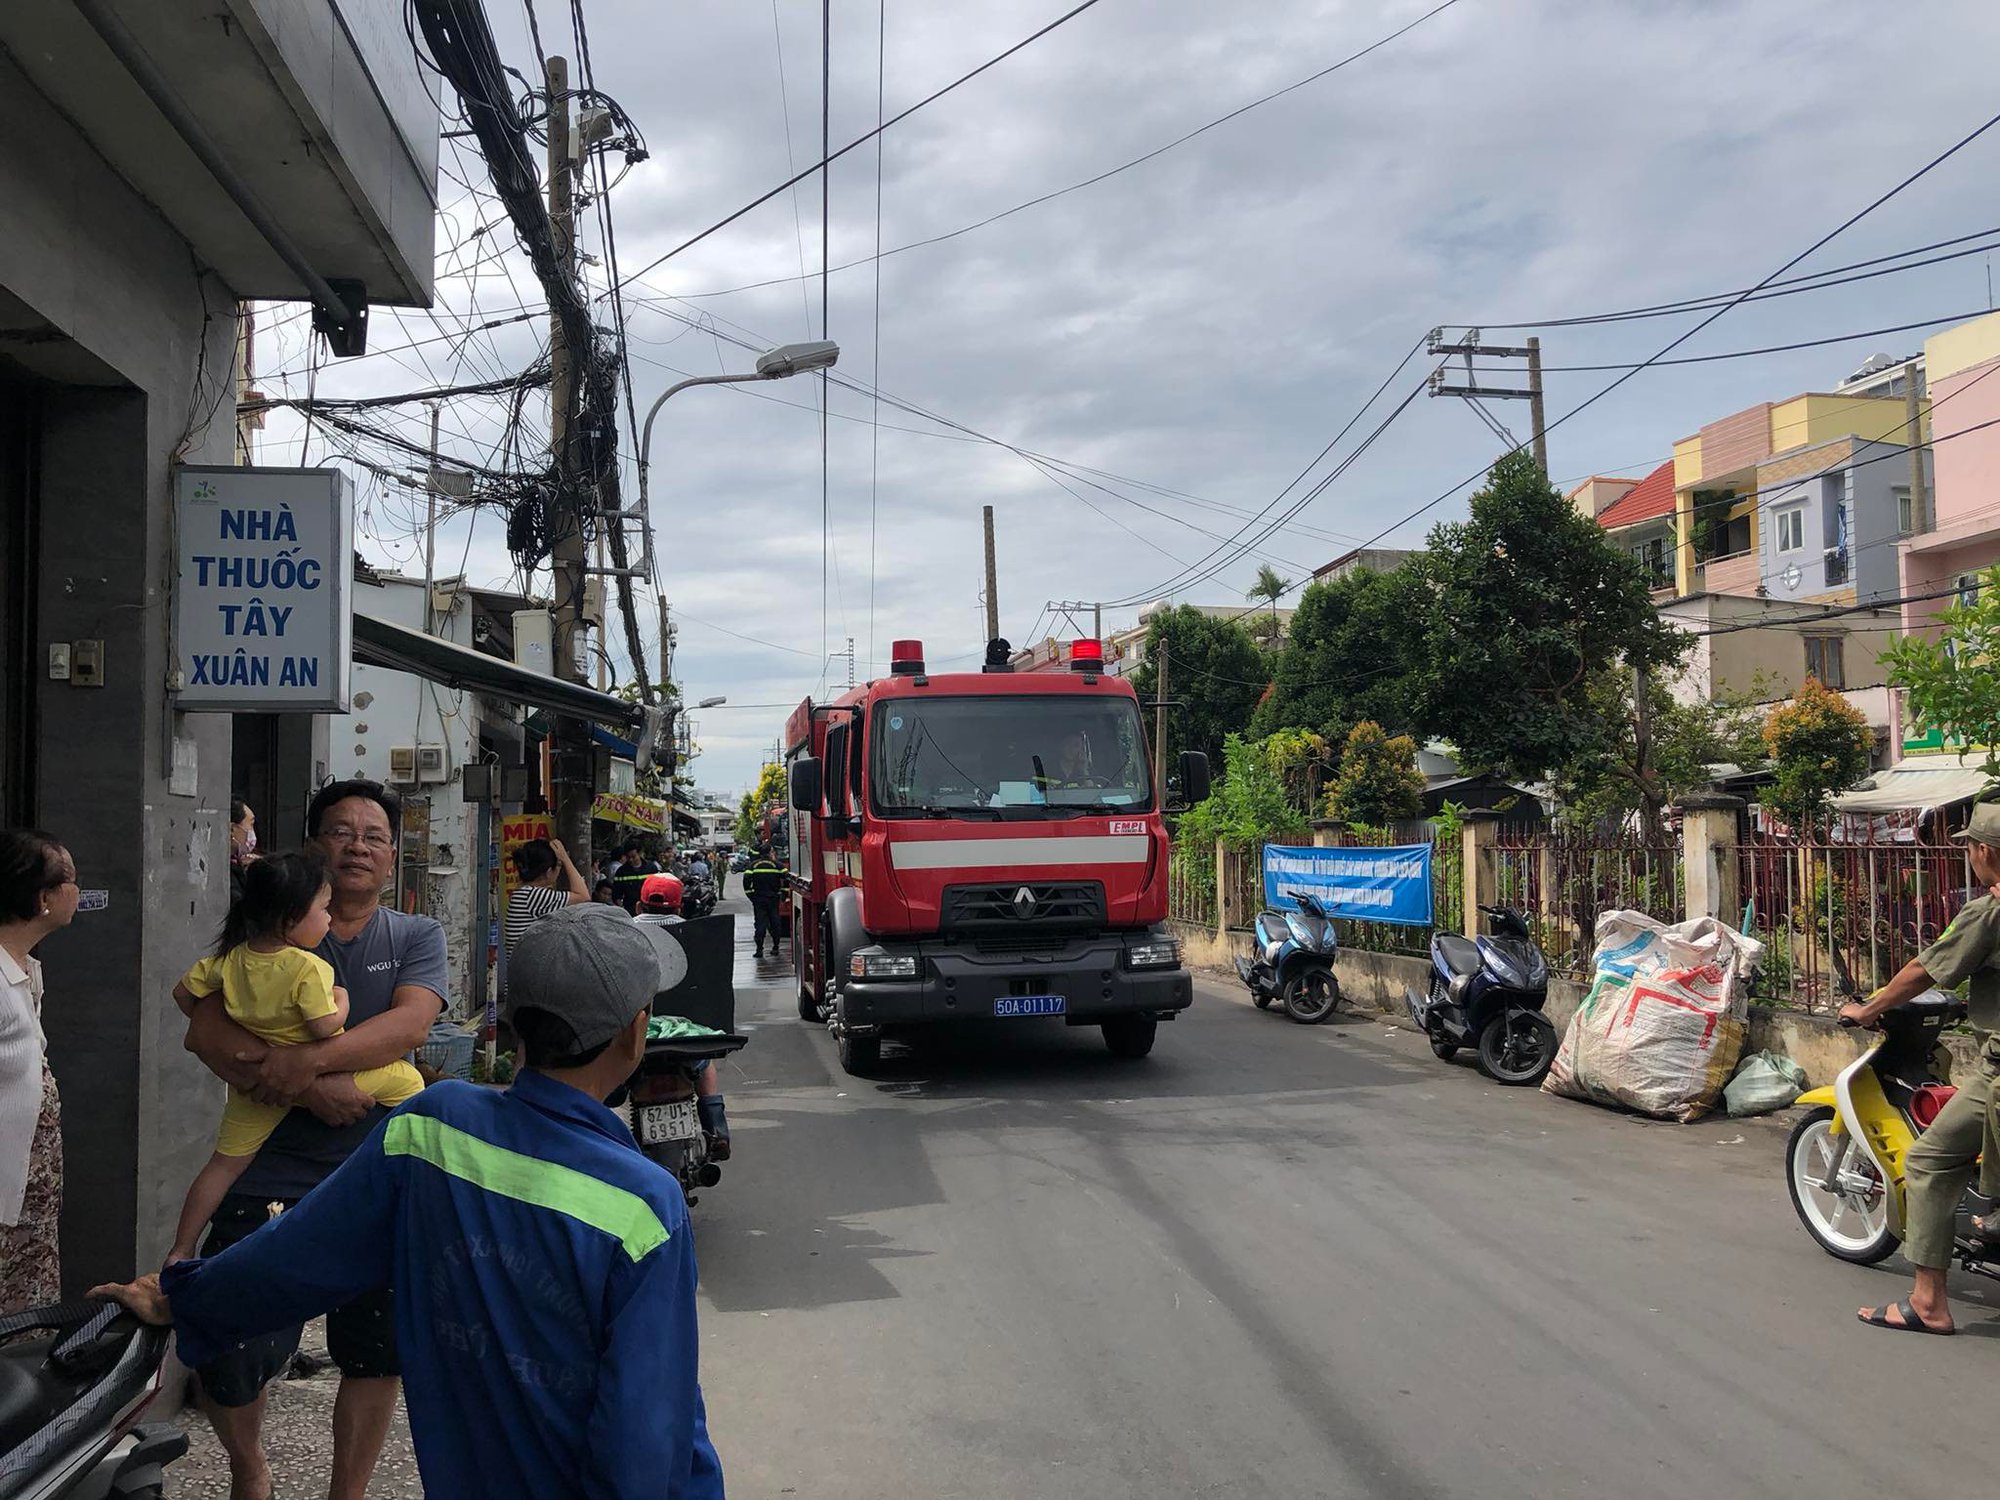 Cháy nhà trong hẻm sâu ở quận Phú Nhuận, 1 phụ nữ được đưa ra ngoài - Ảnh 2.